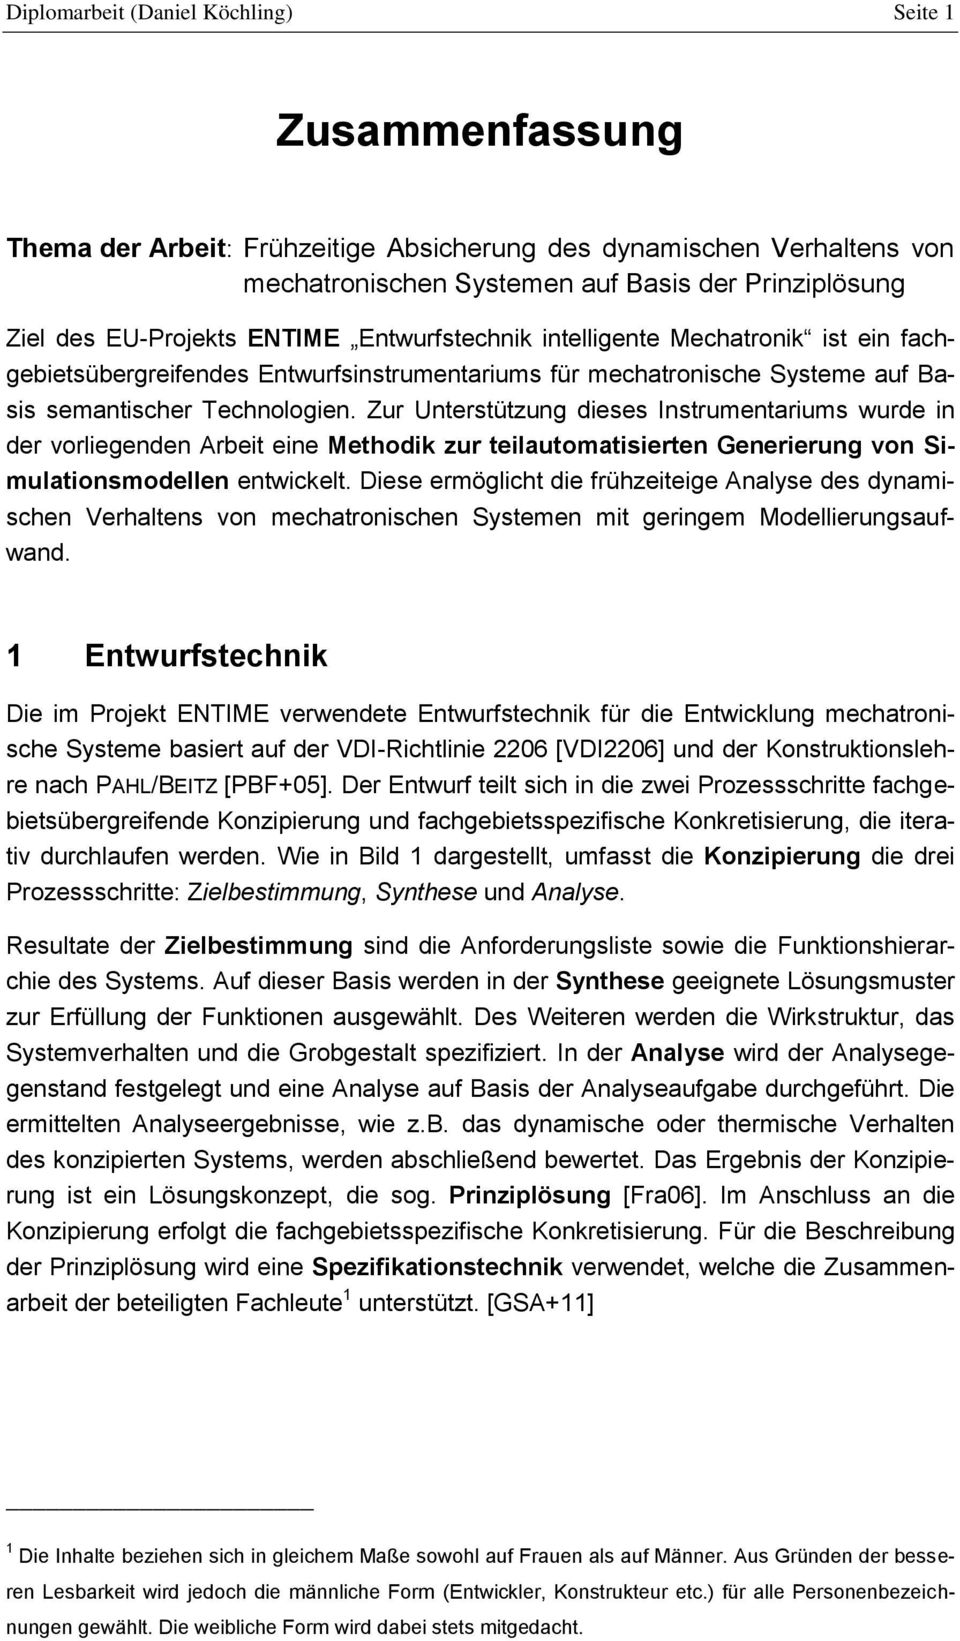 Diplomarbeit Daniel Köchling Seite 1 Zusammenfassung Pdf